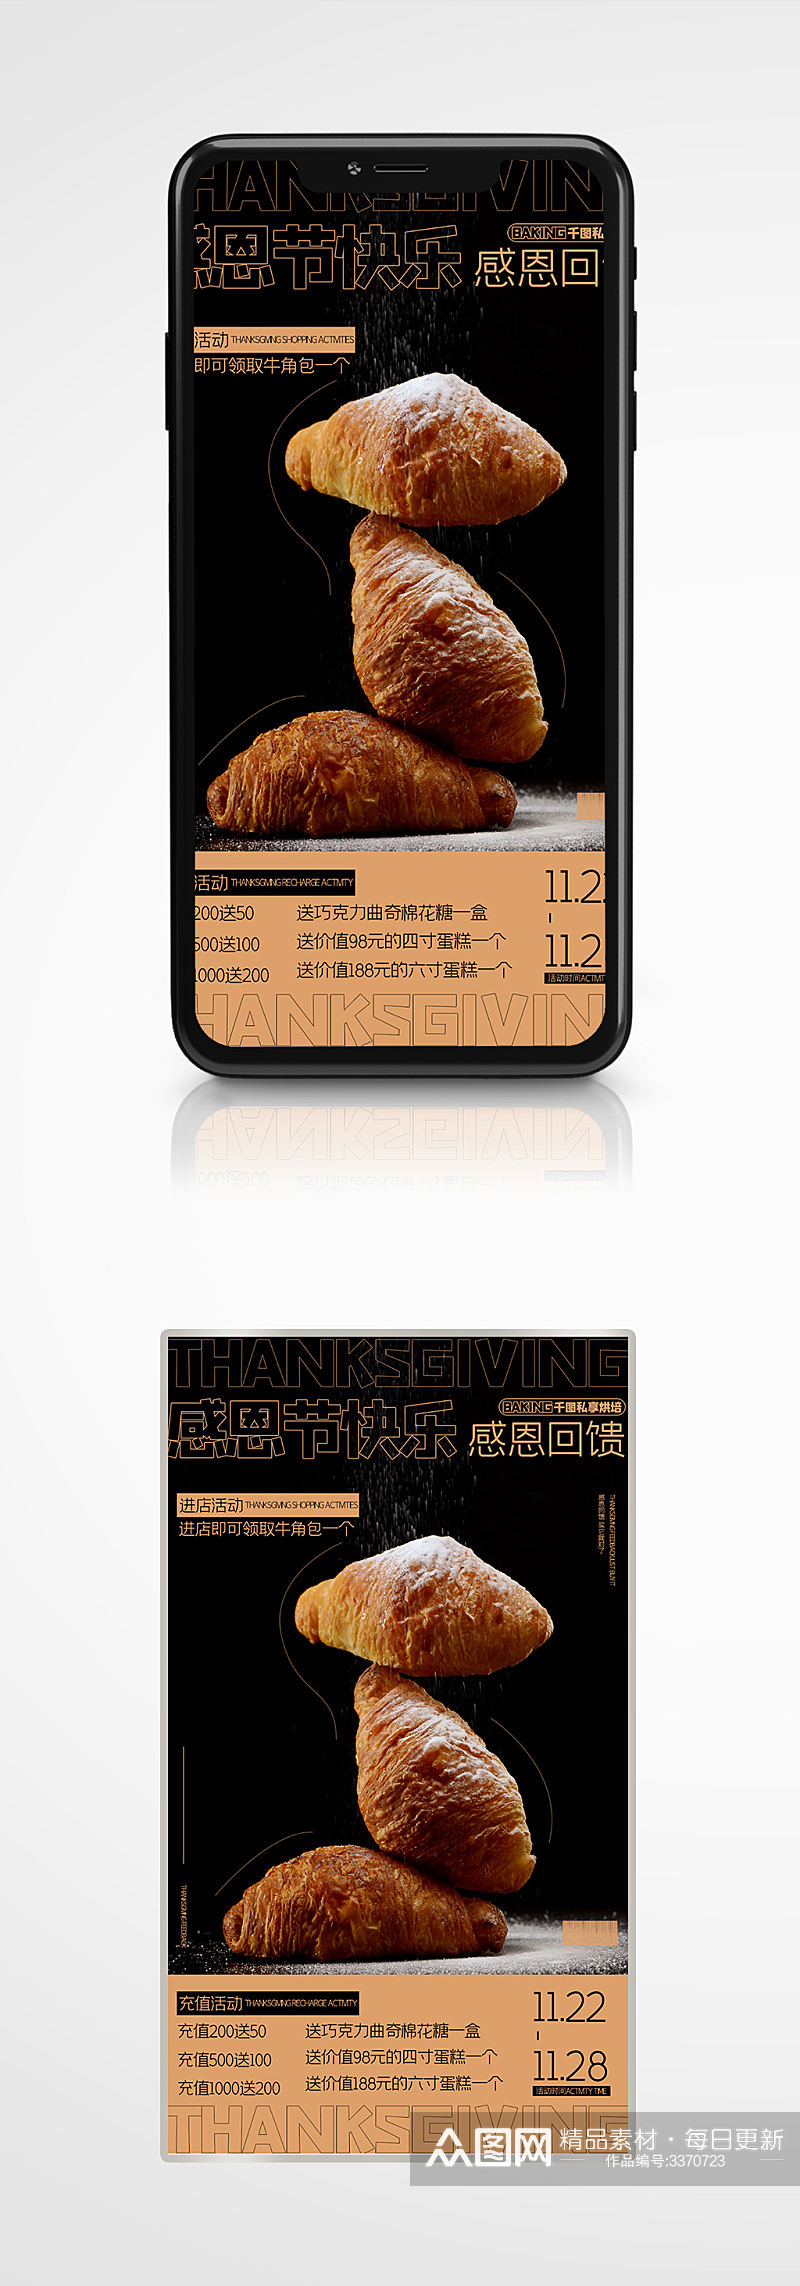 简约营销感恩节活动甜品烘焙宣传手机海报素材